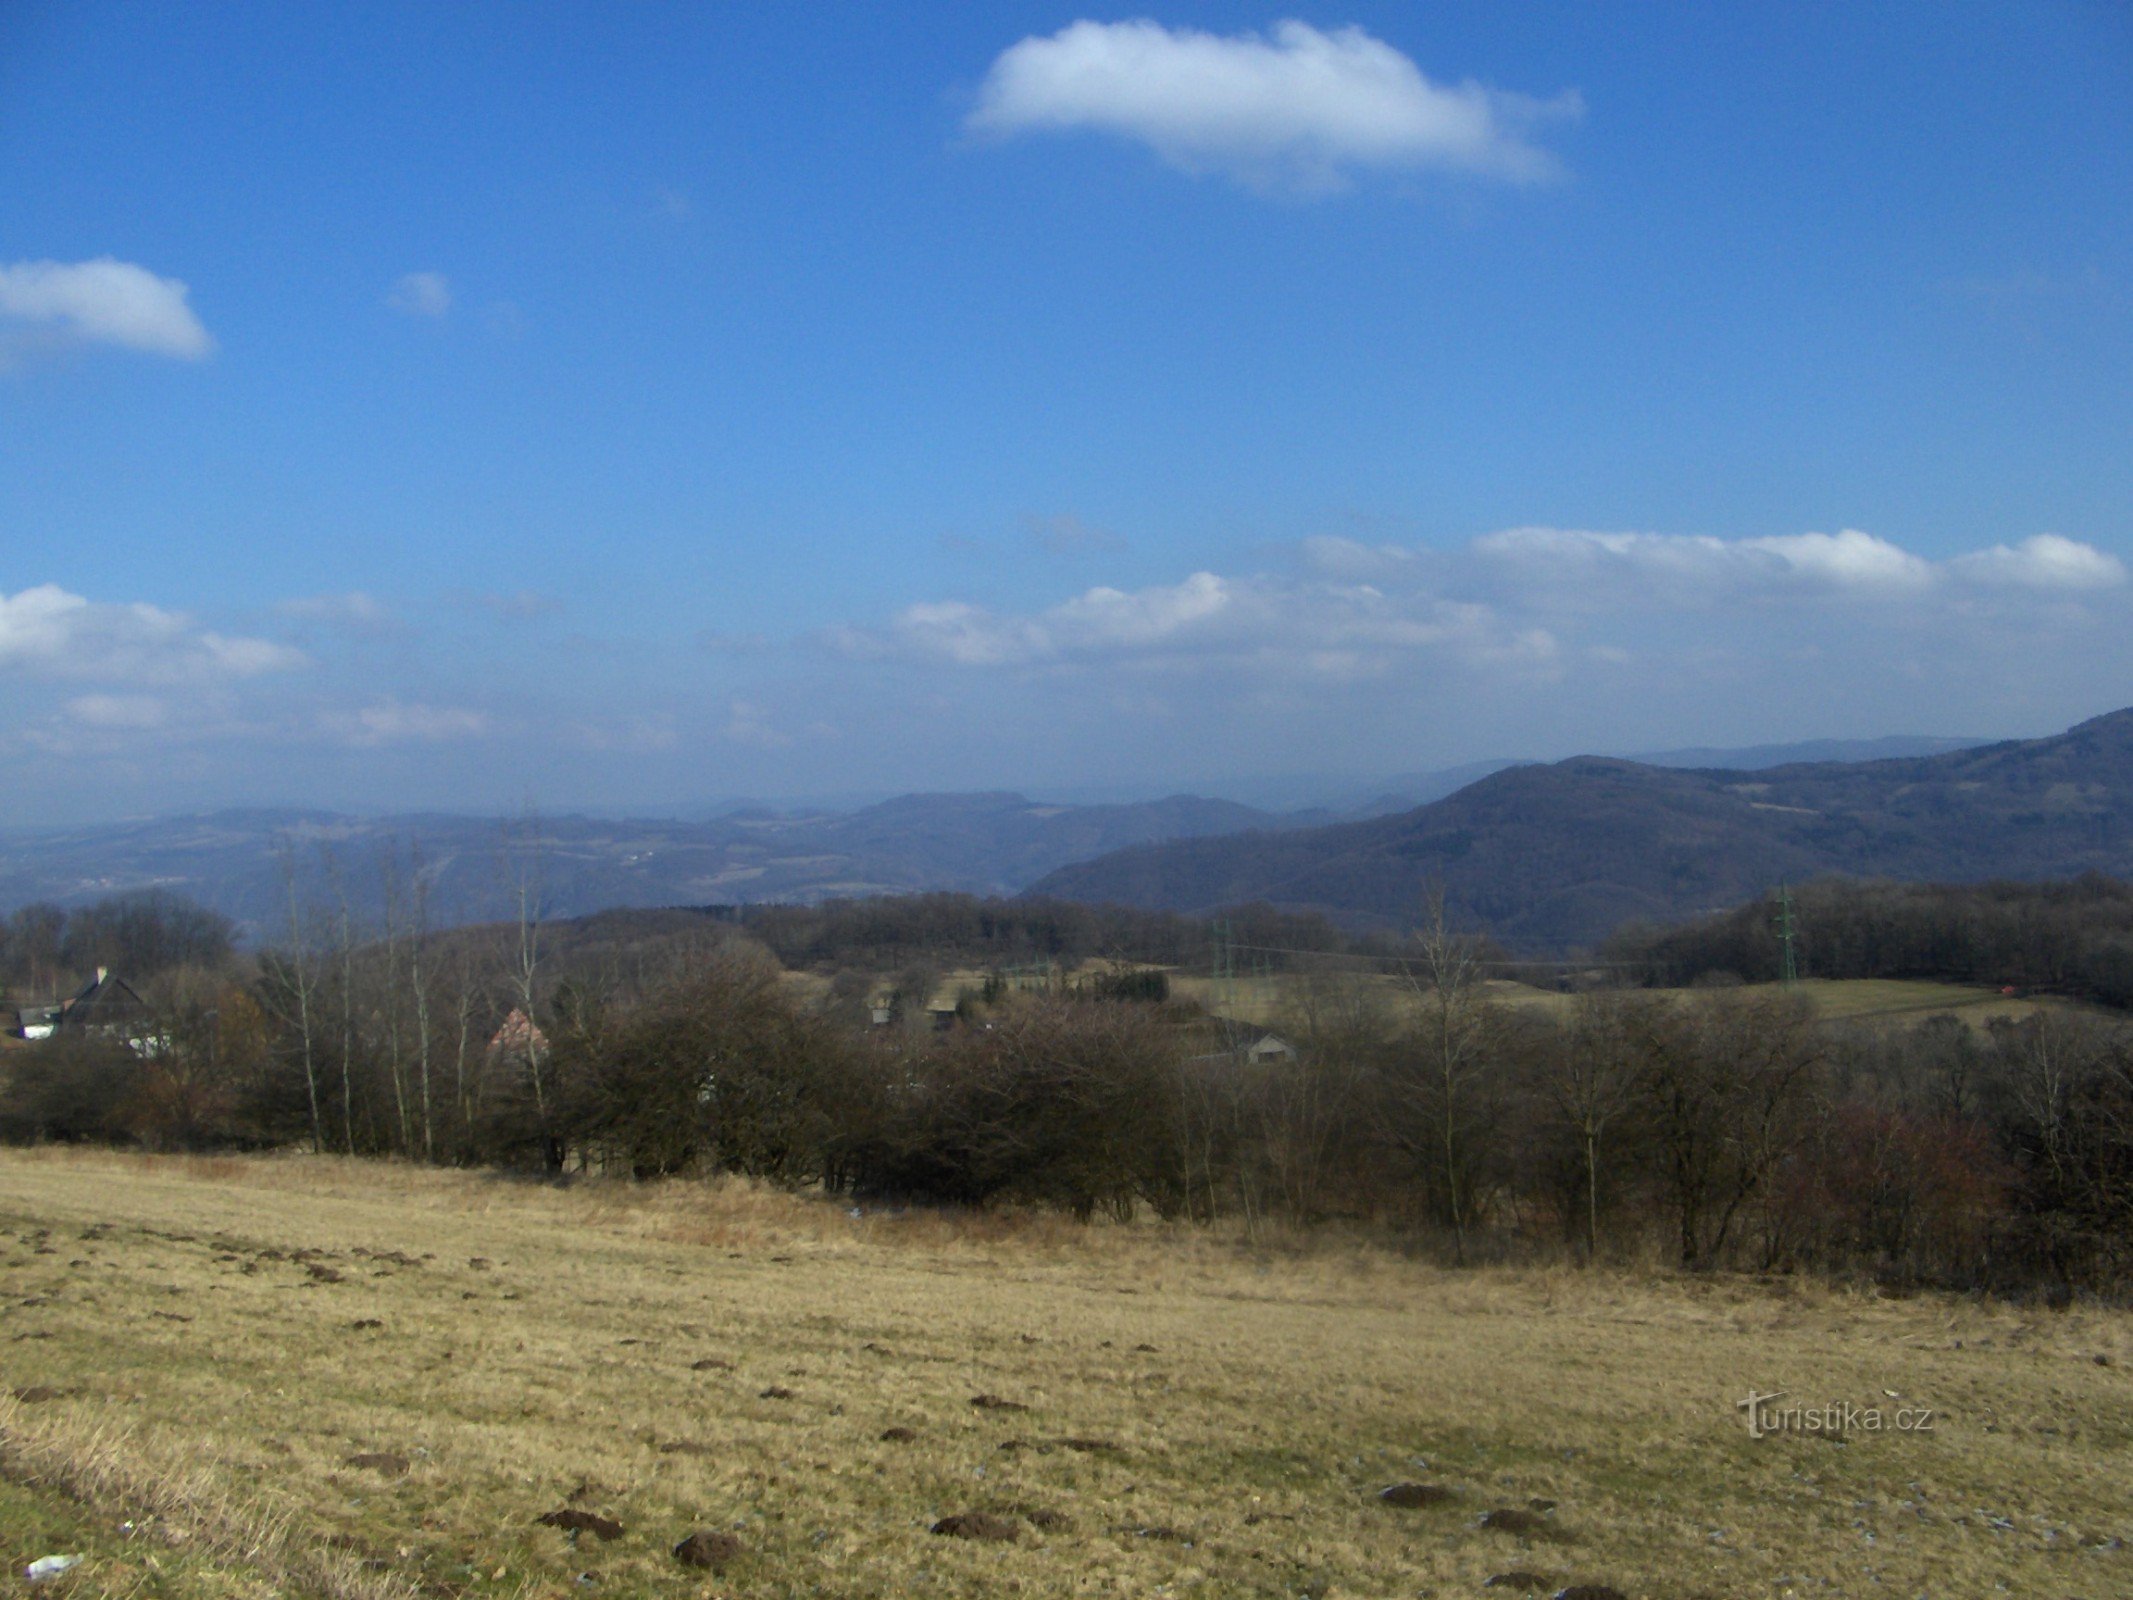 Pohoří settlement, Děčínský Sněžník in the background